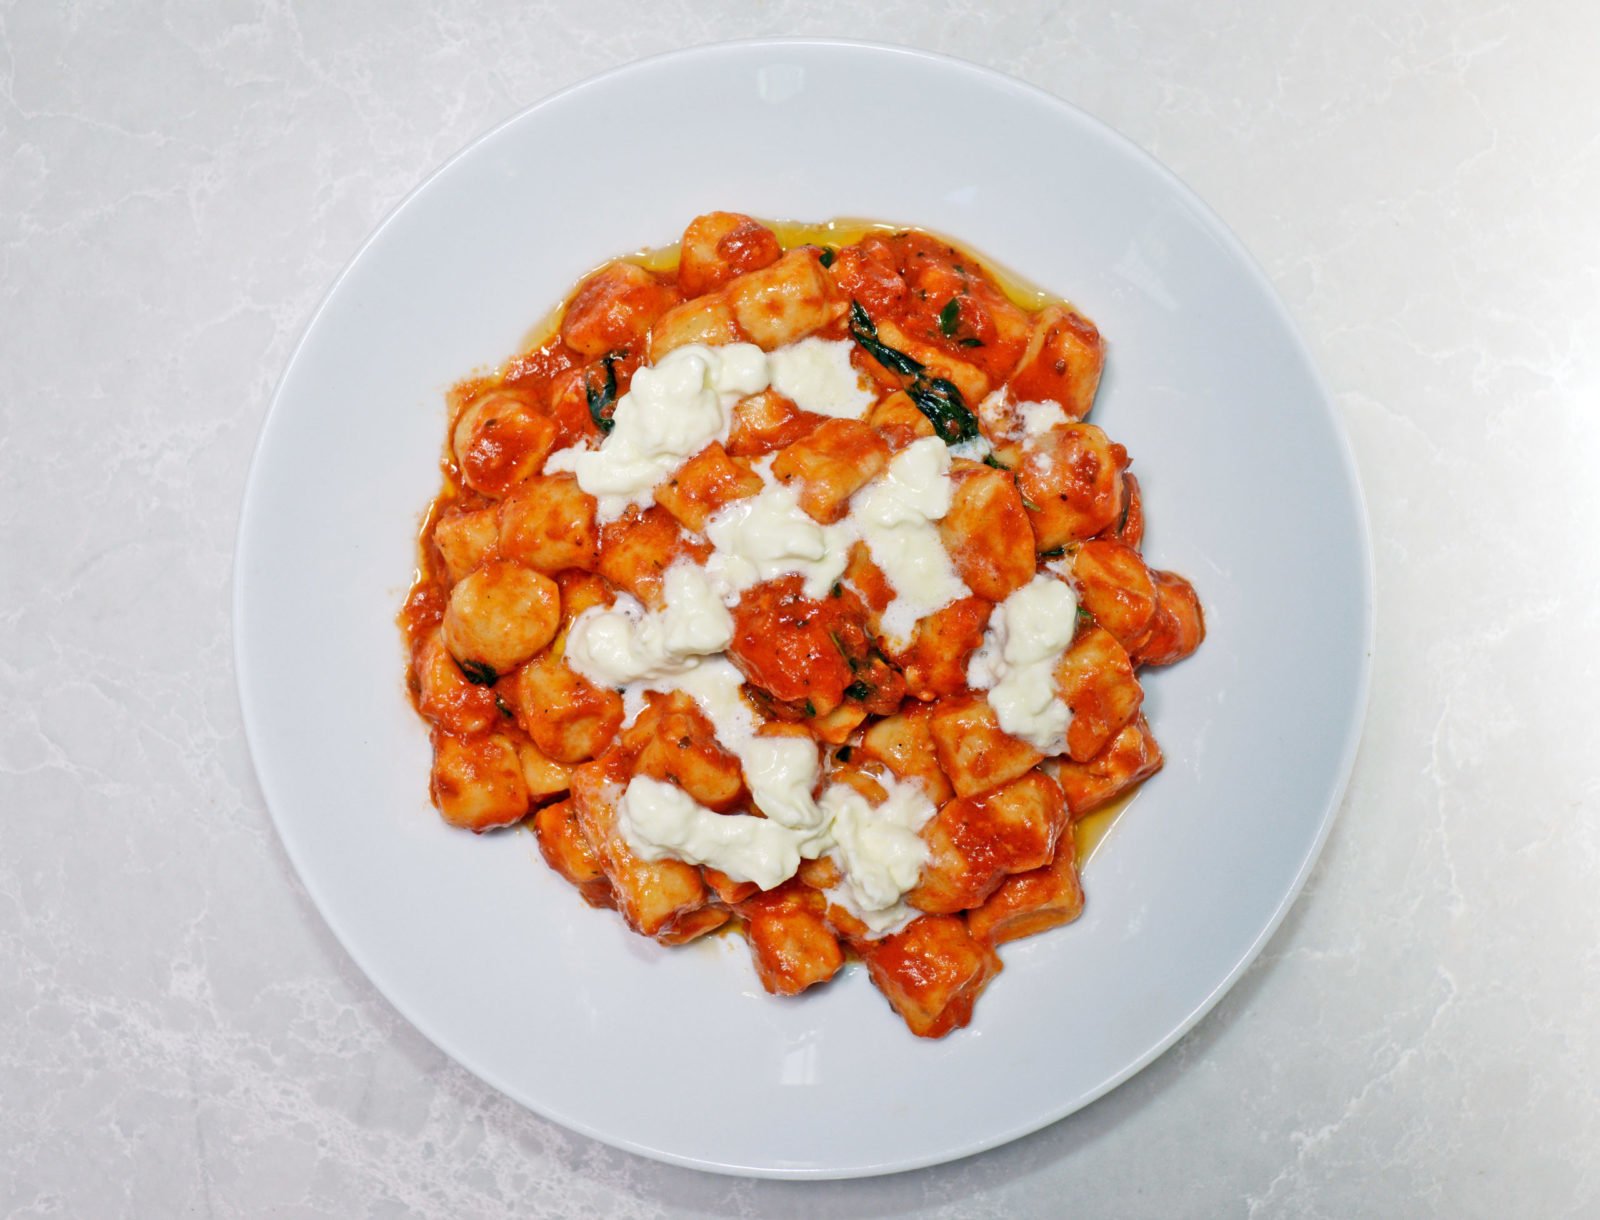 A Ricotta Gnocchi and Tomato Sauce Recipe From Chef Mark McEwan